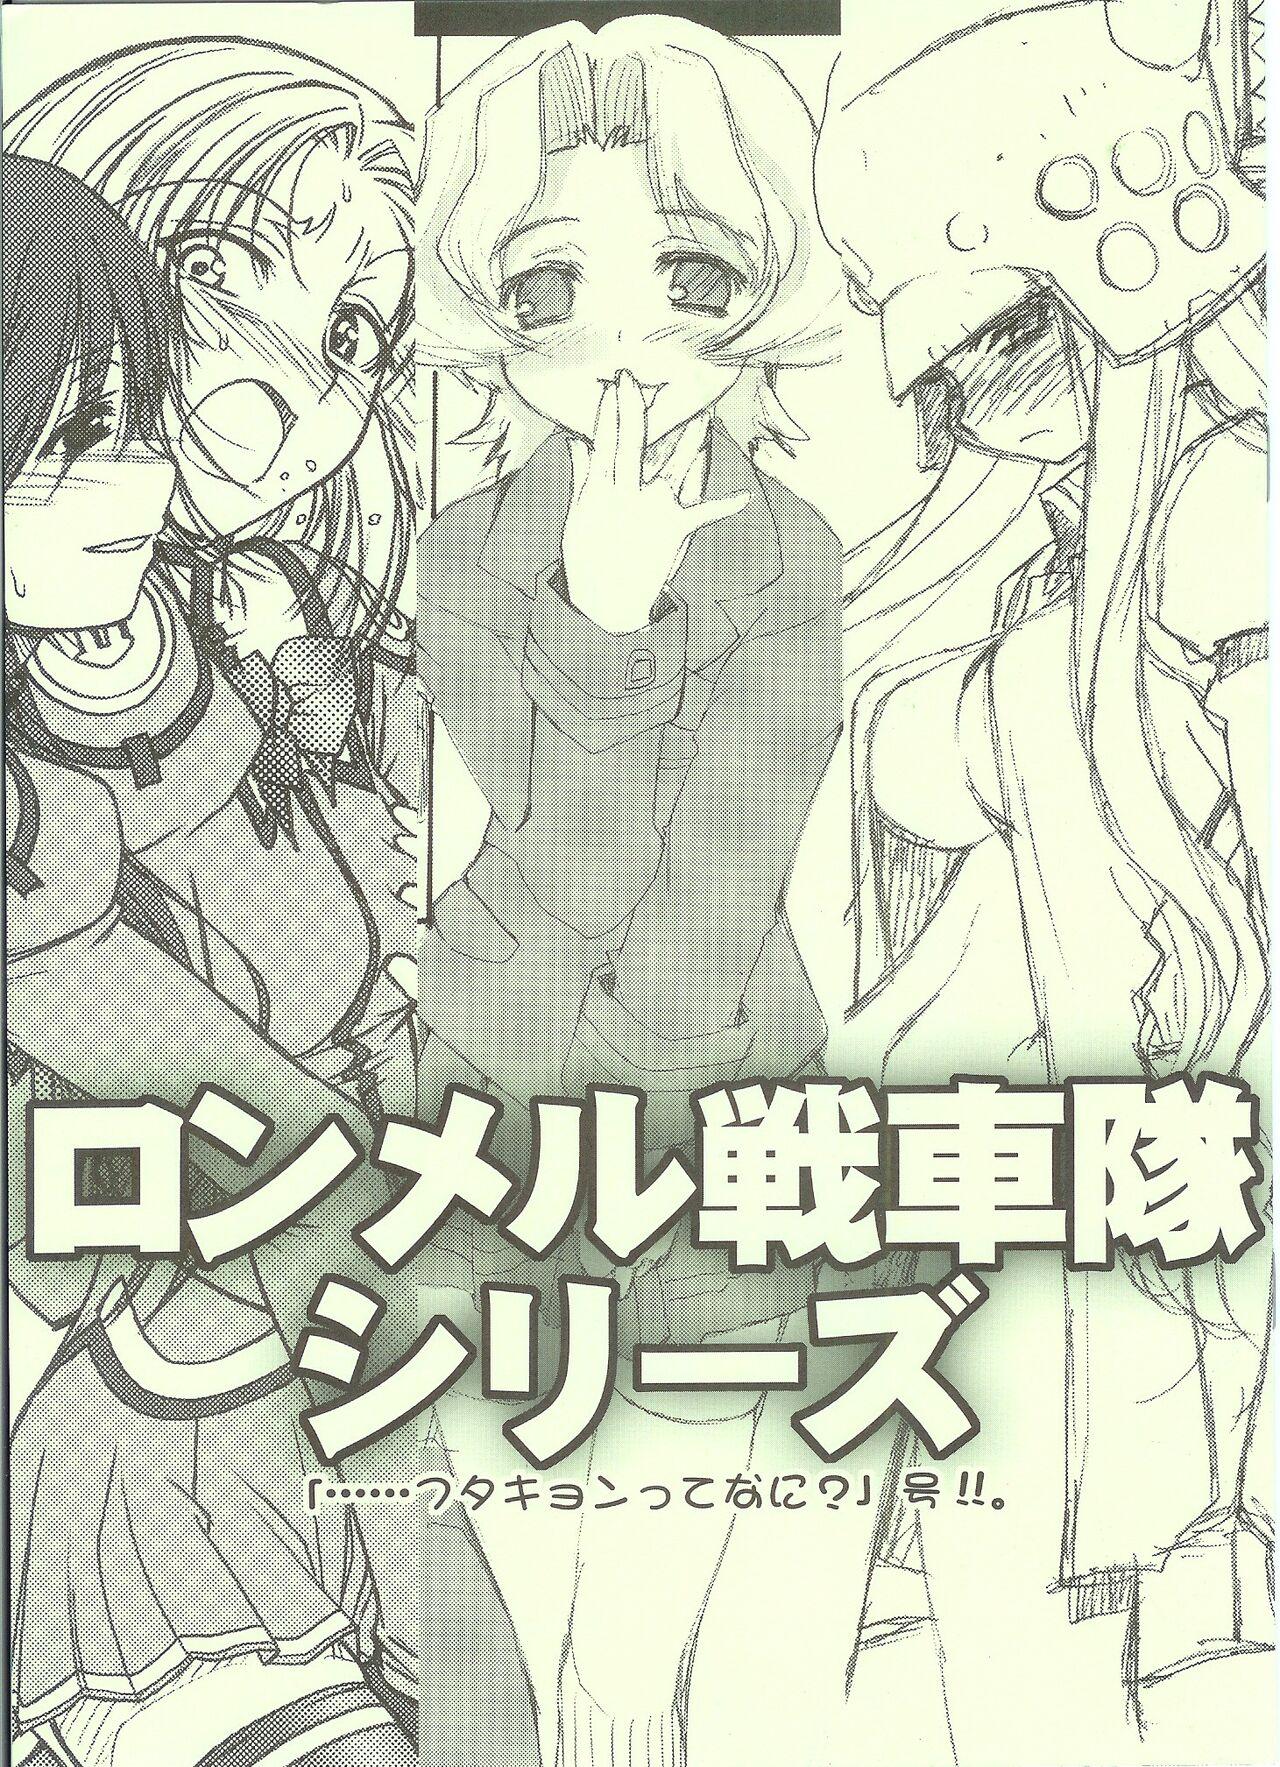 Teenfuns ロンメル戦車隊シリーズ 「…フタキョンってなに?」号!!。 - Genshiken Kujibiki unbalance Amateur - Page 1